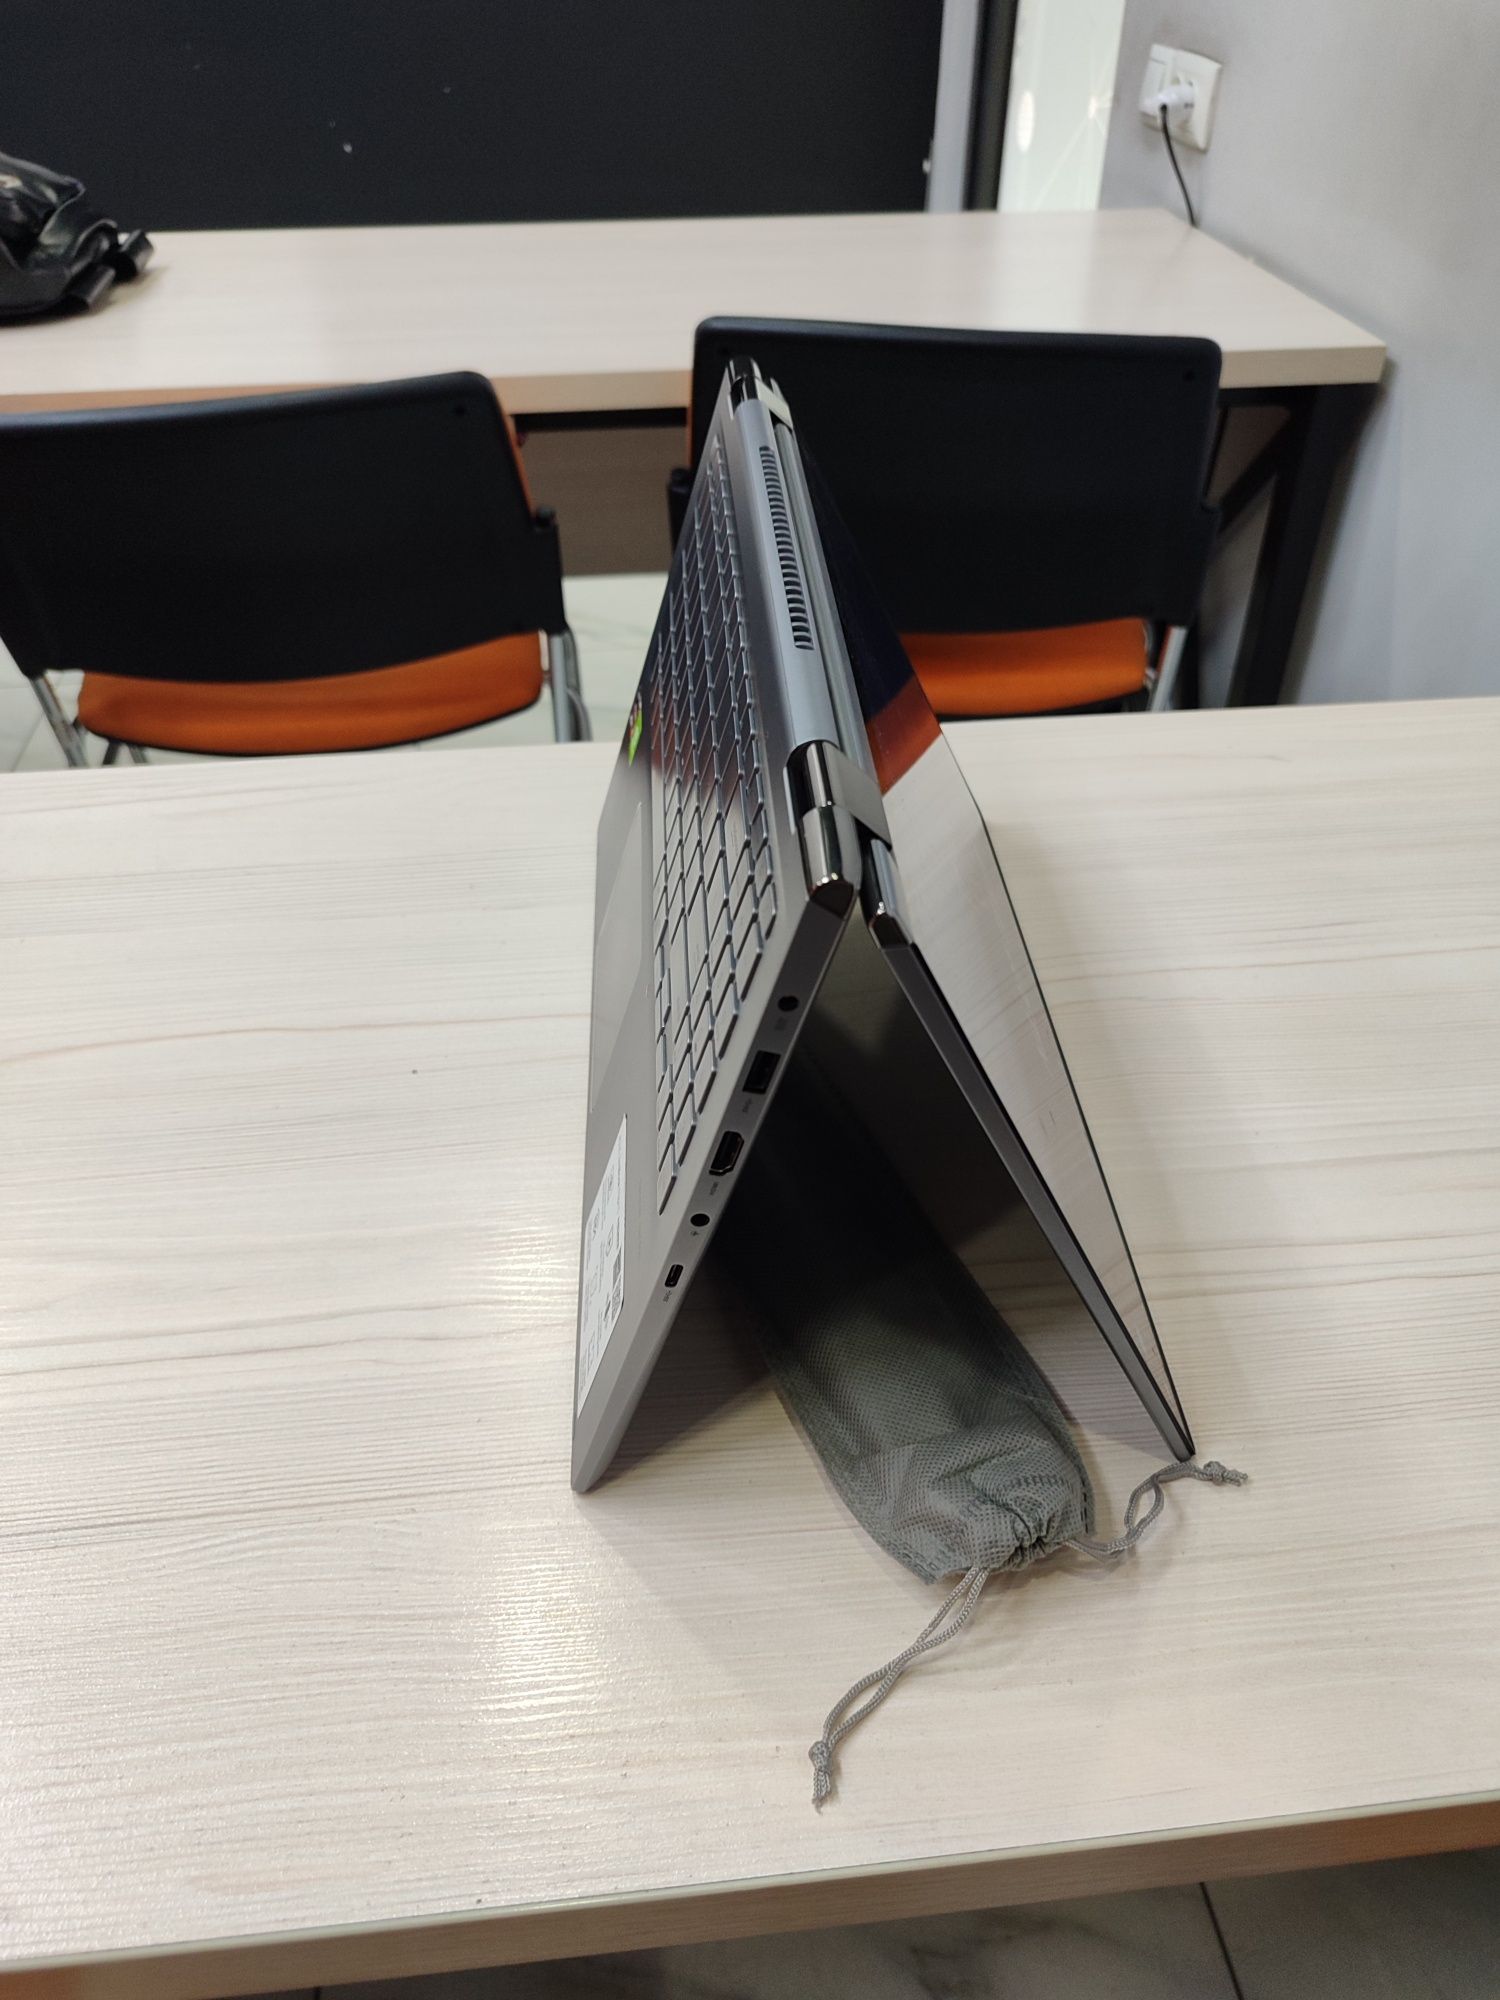 Asus ZenBook Flip 15